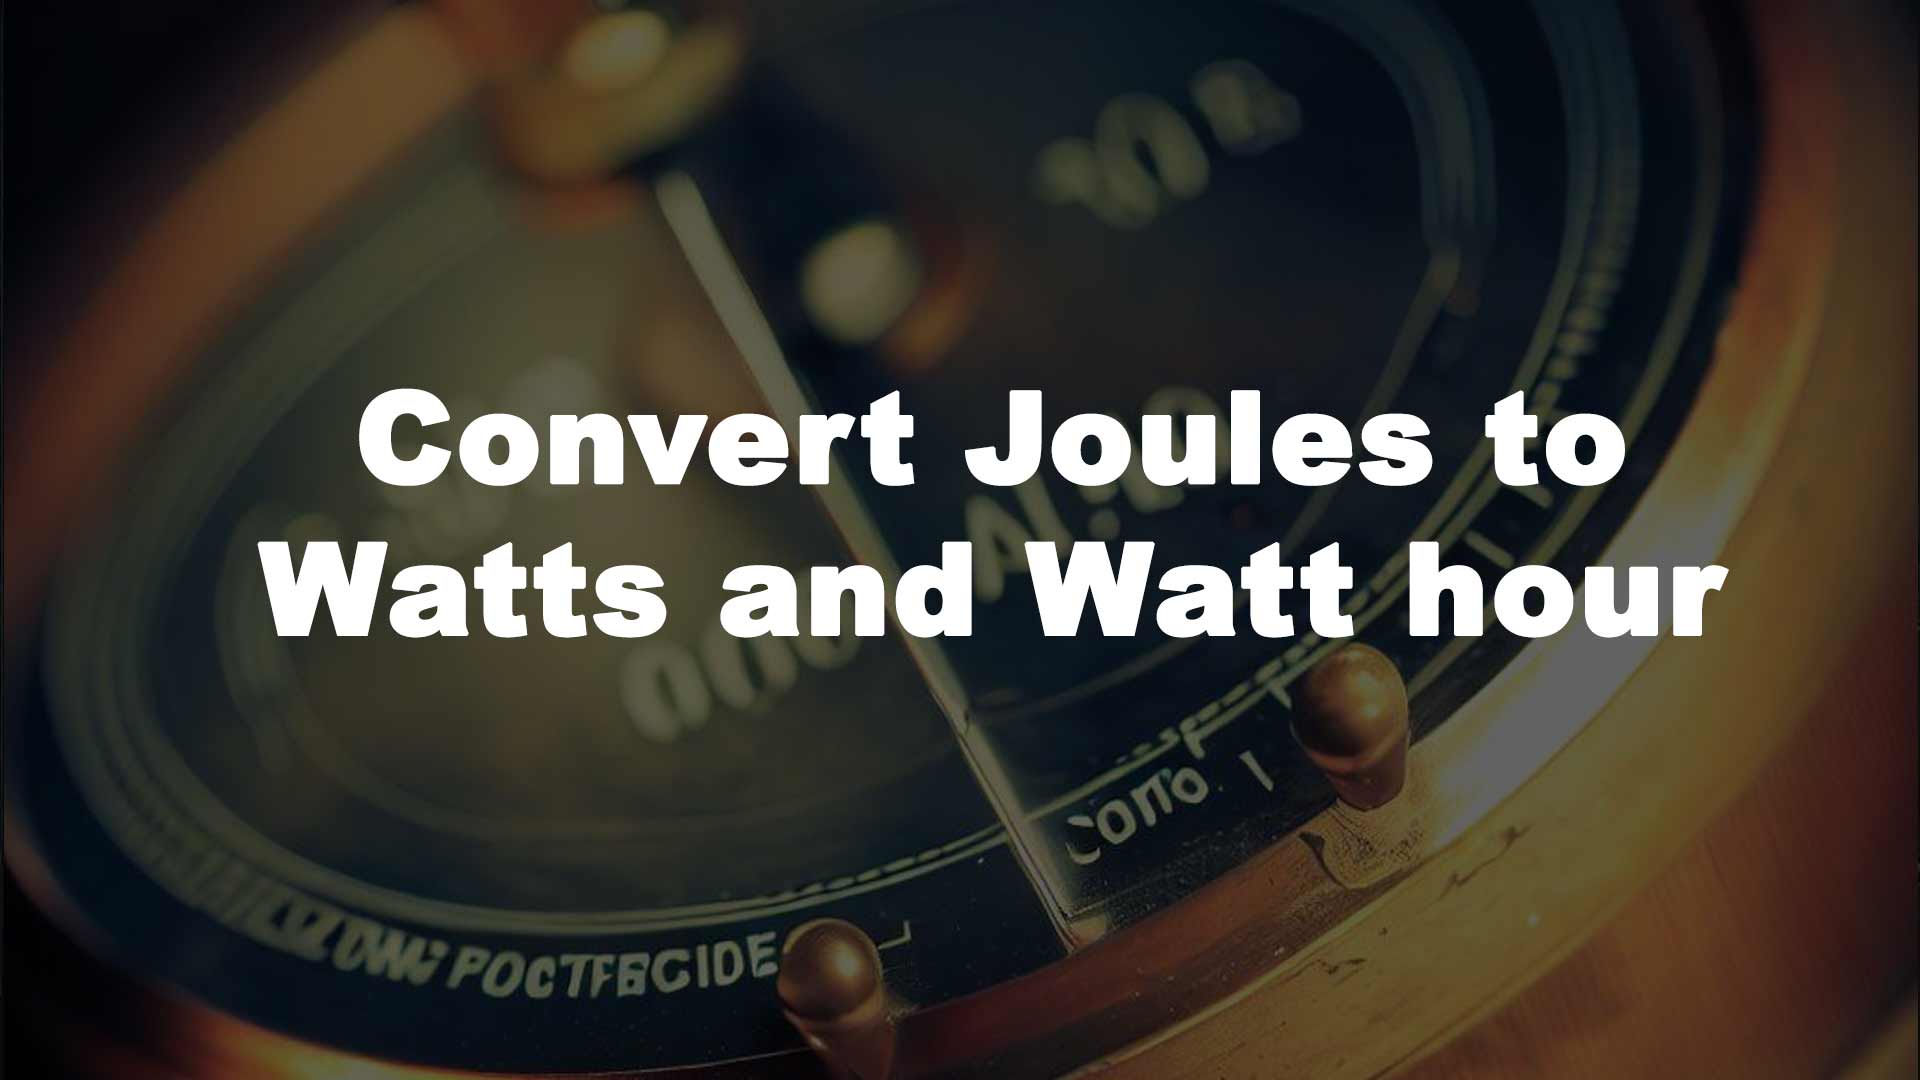 Convert Joules to Watts and Watt hour image